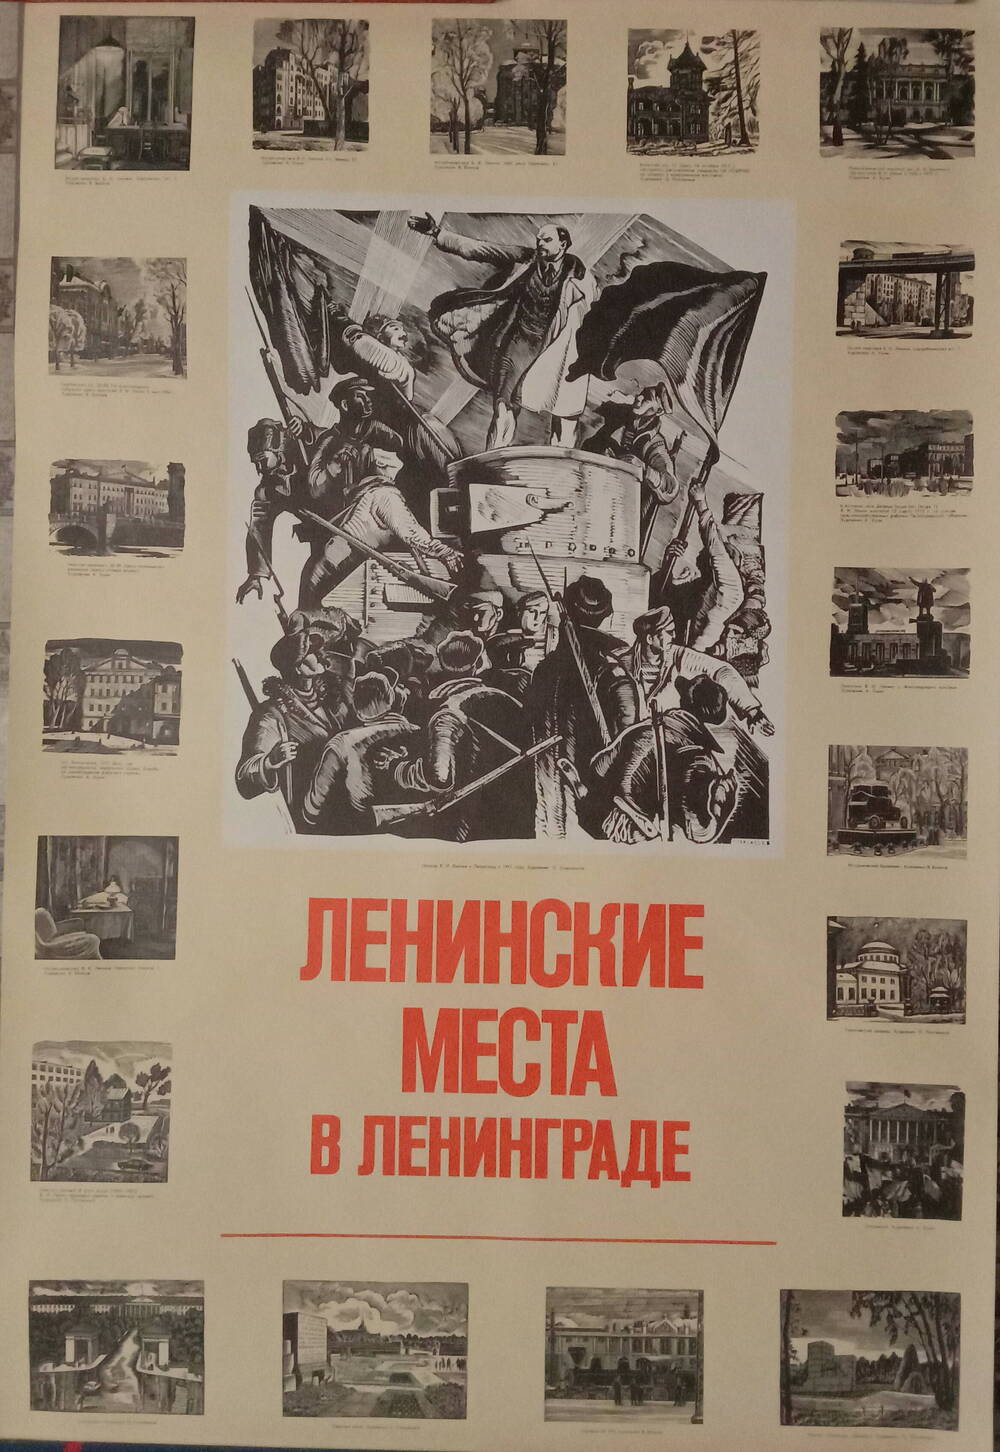 Плакат
«Ленинские места в Ленинграде»